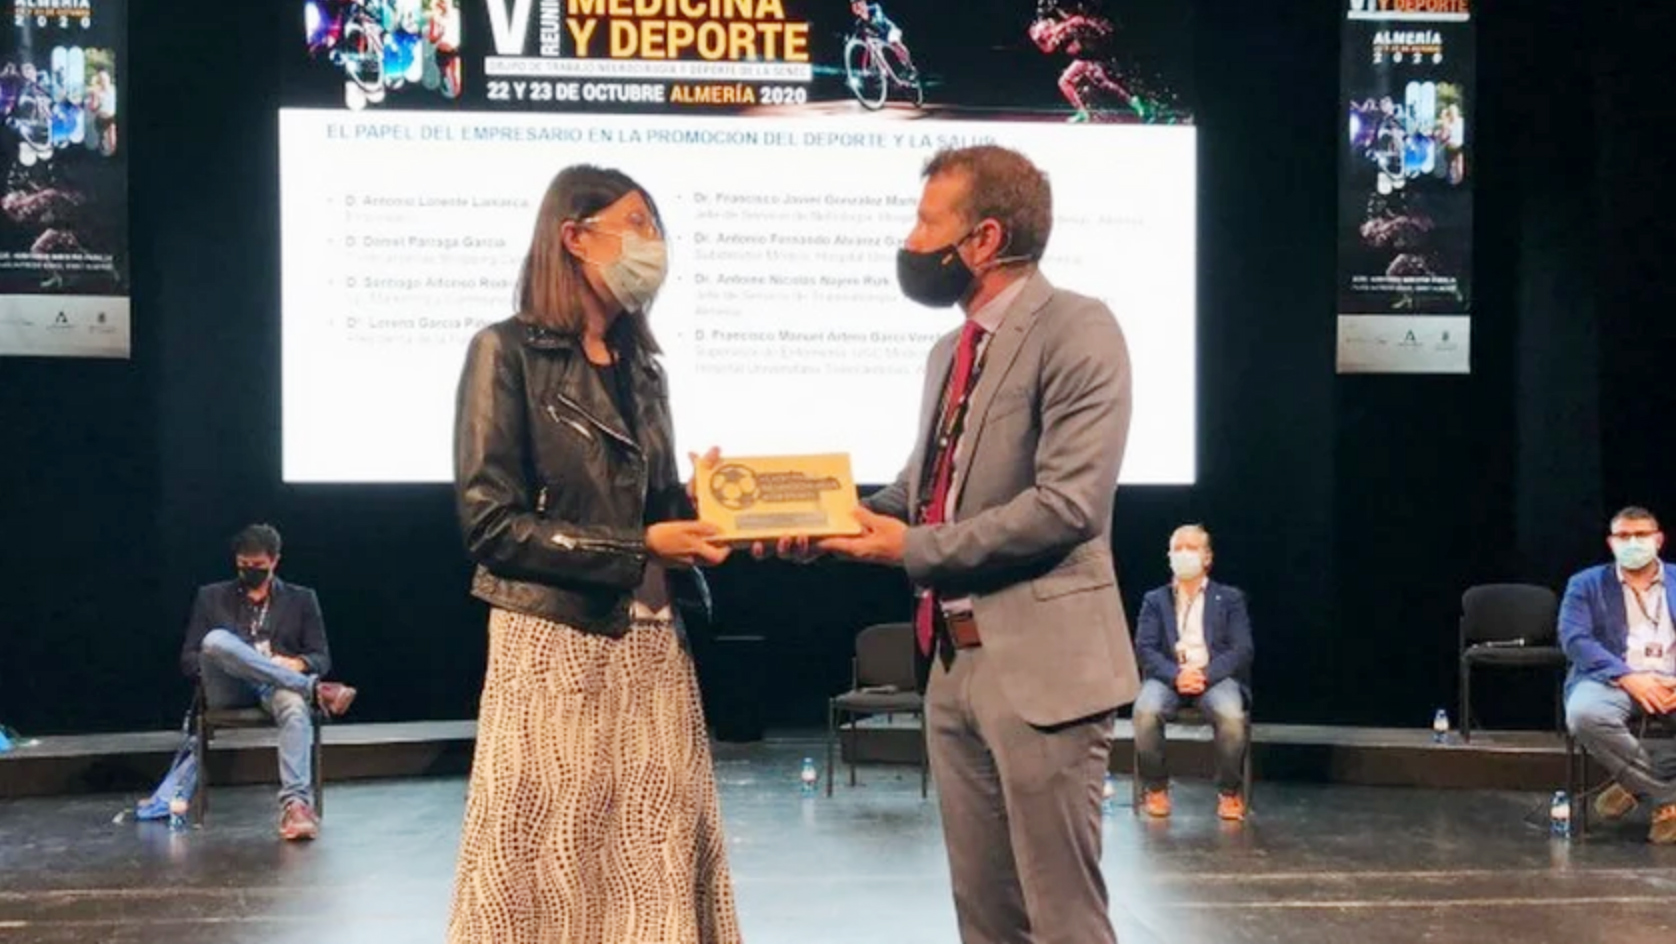 Turki galardonado en la Reunión de Medicina y Deporte 2020